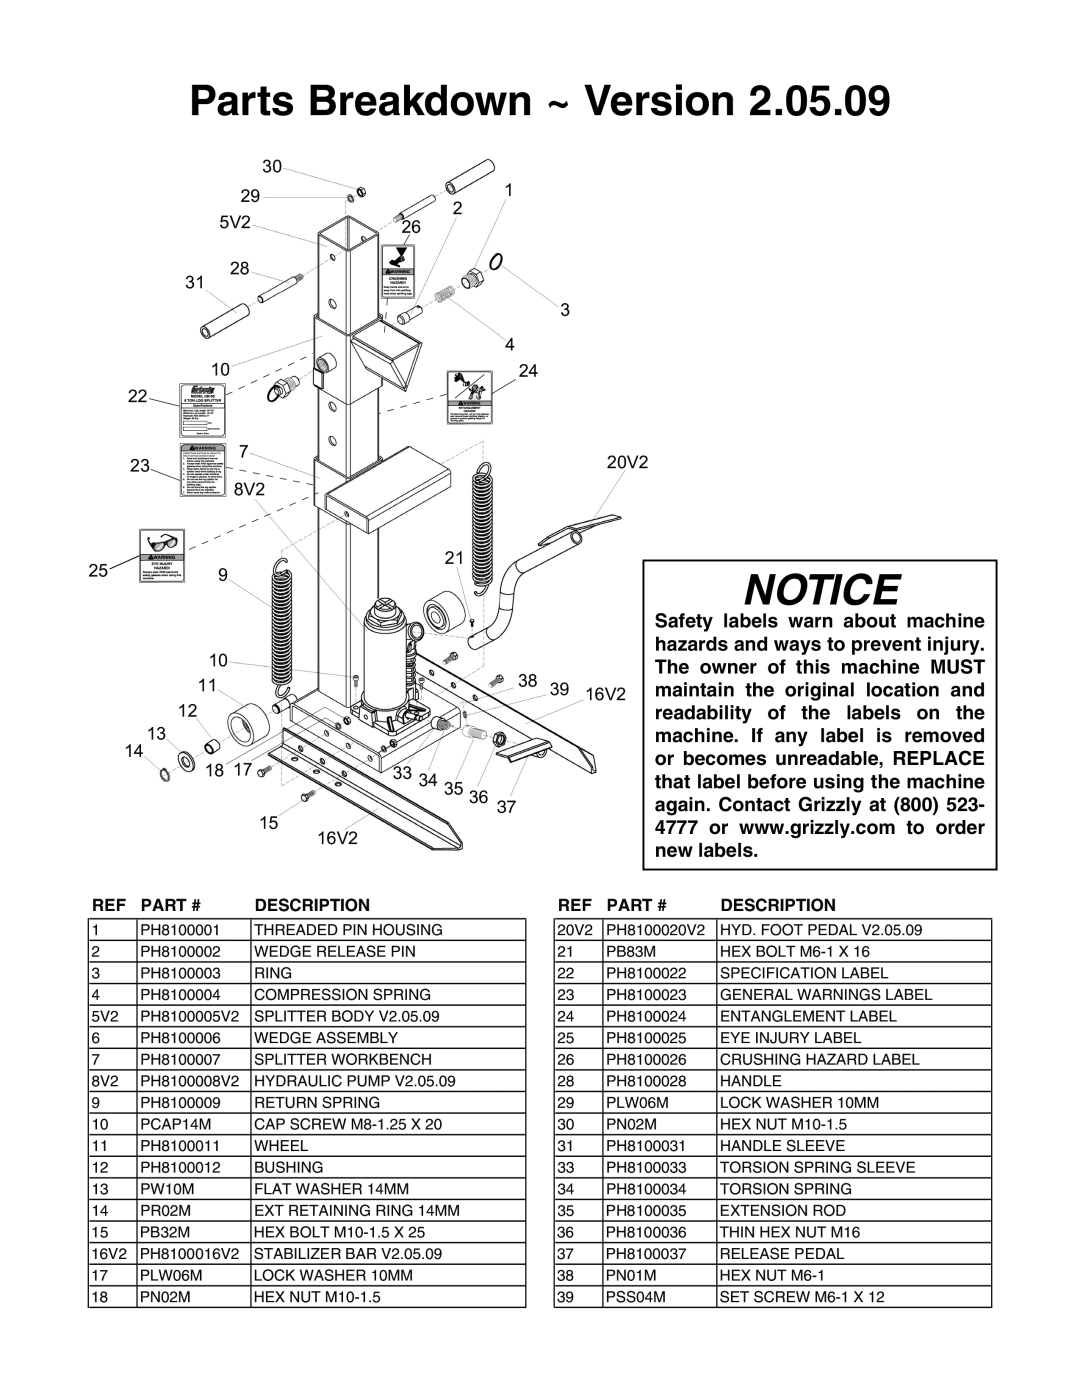 Grizzly H8100 instruction sheet Parts Breakdown ~ Version, Notice, Part #, Description 